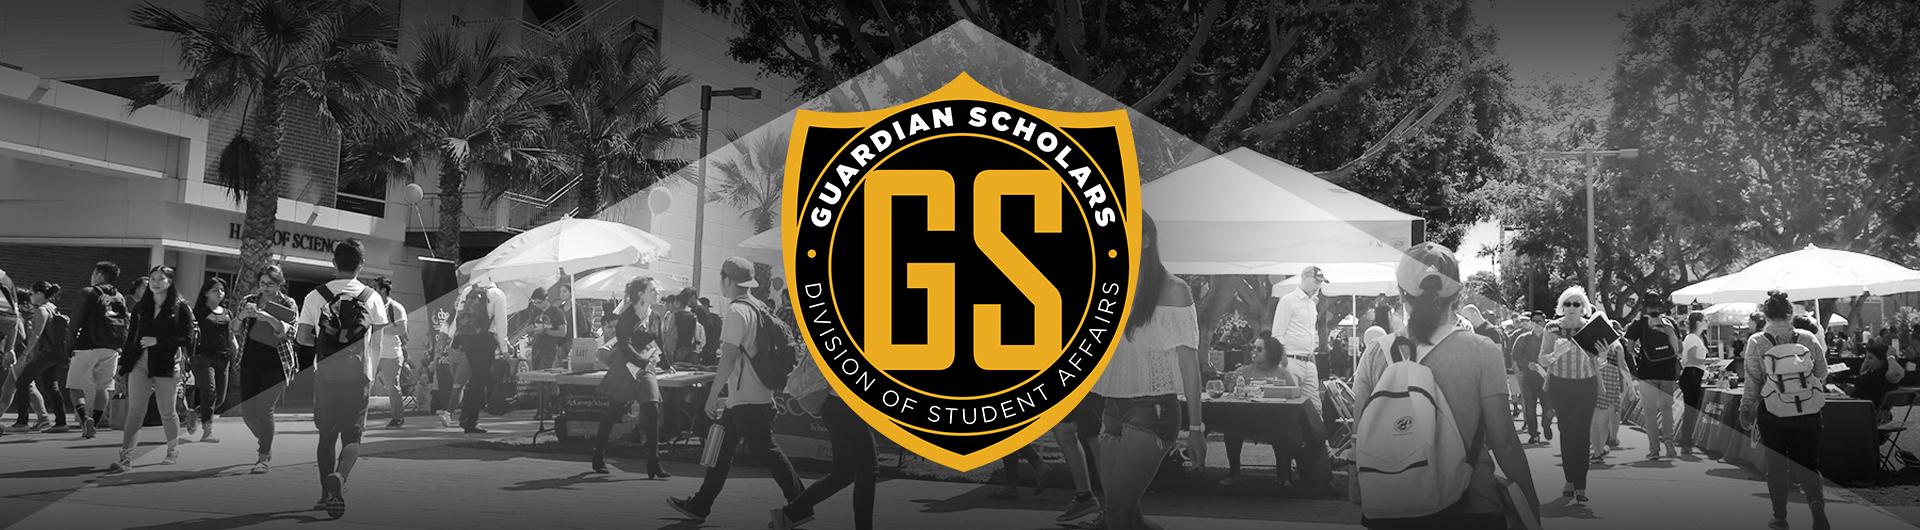 Guardian Scholars Banner